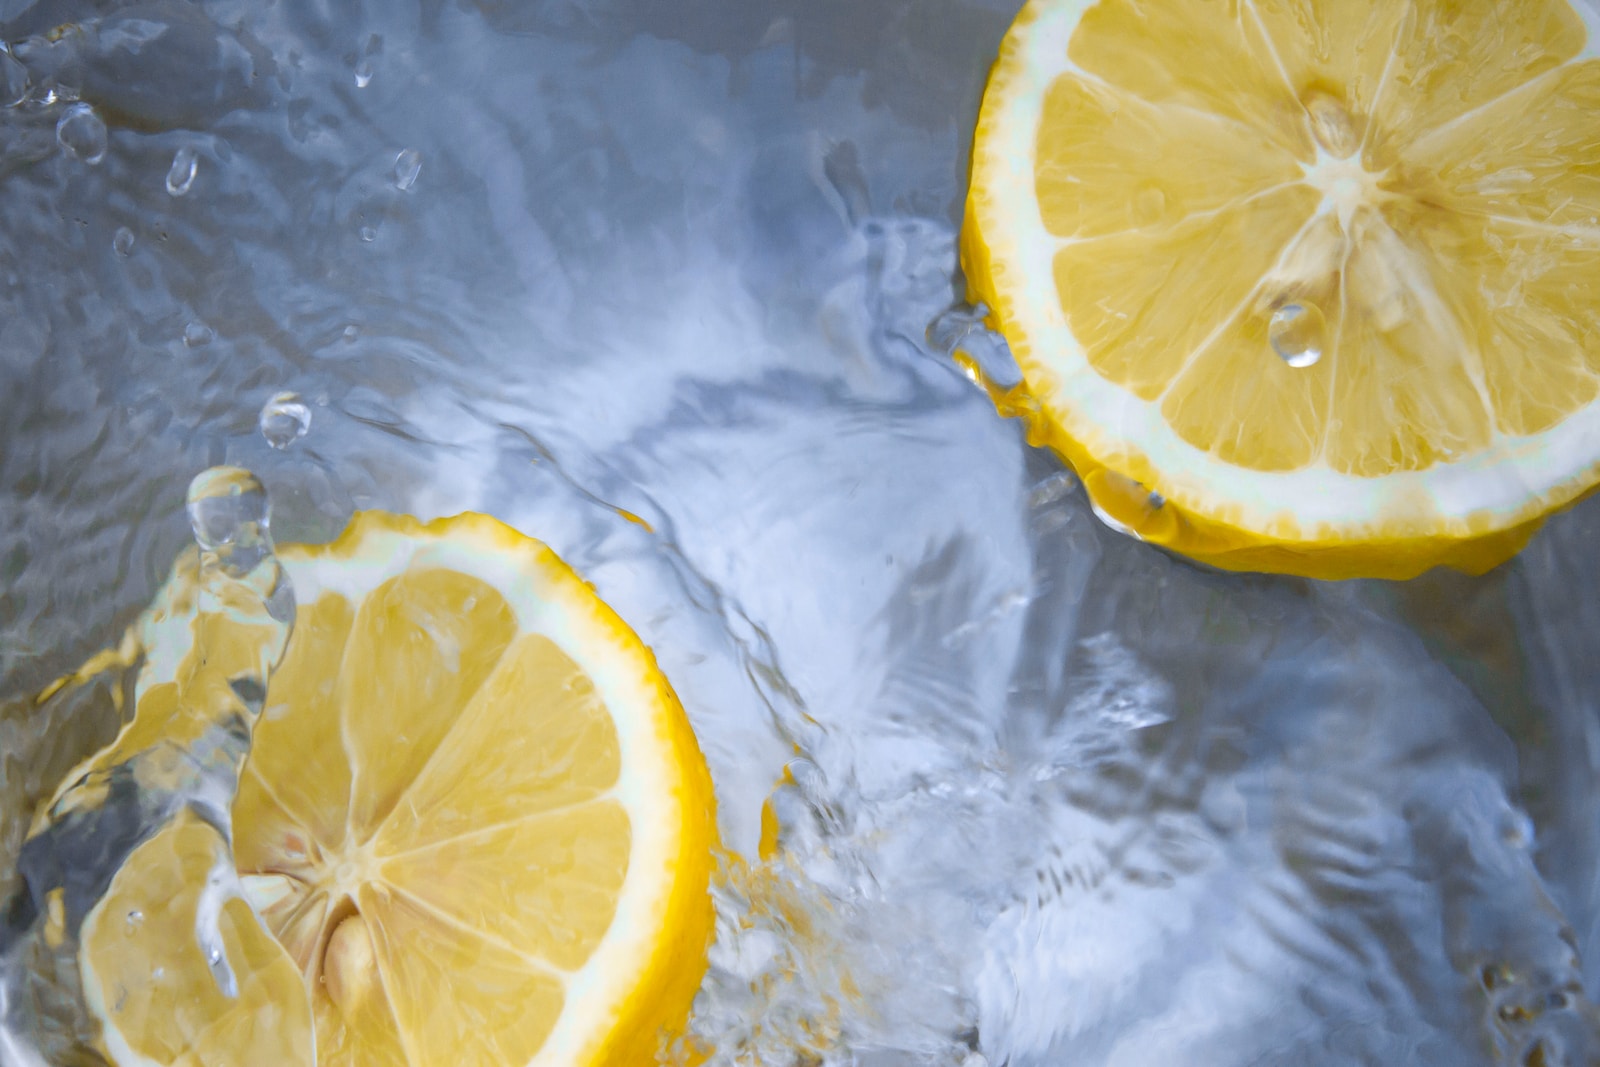 beneficios agua con limon